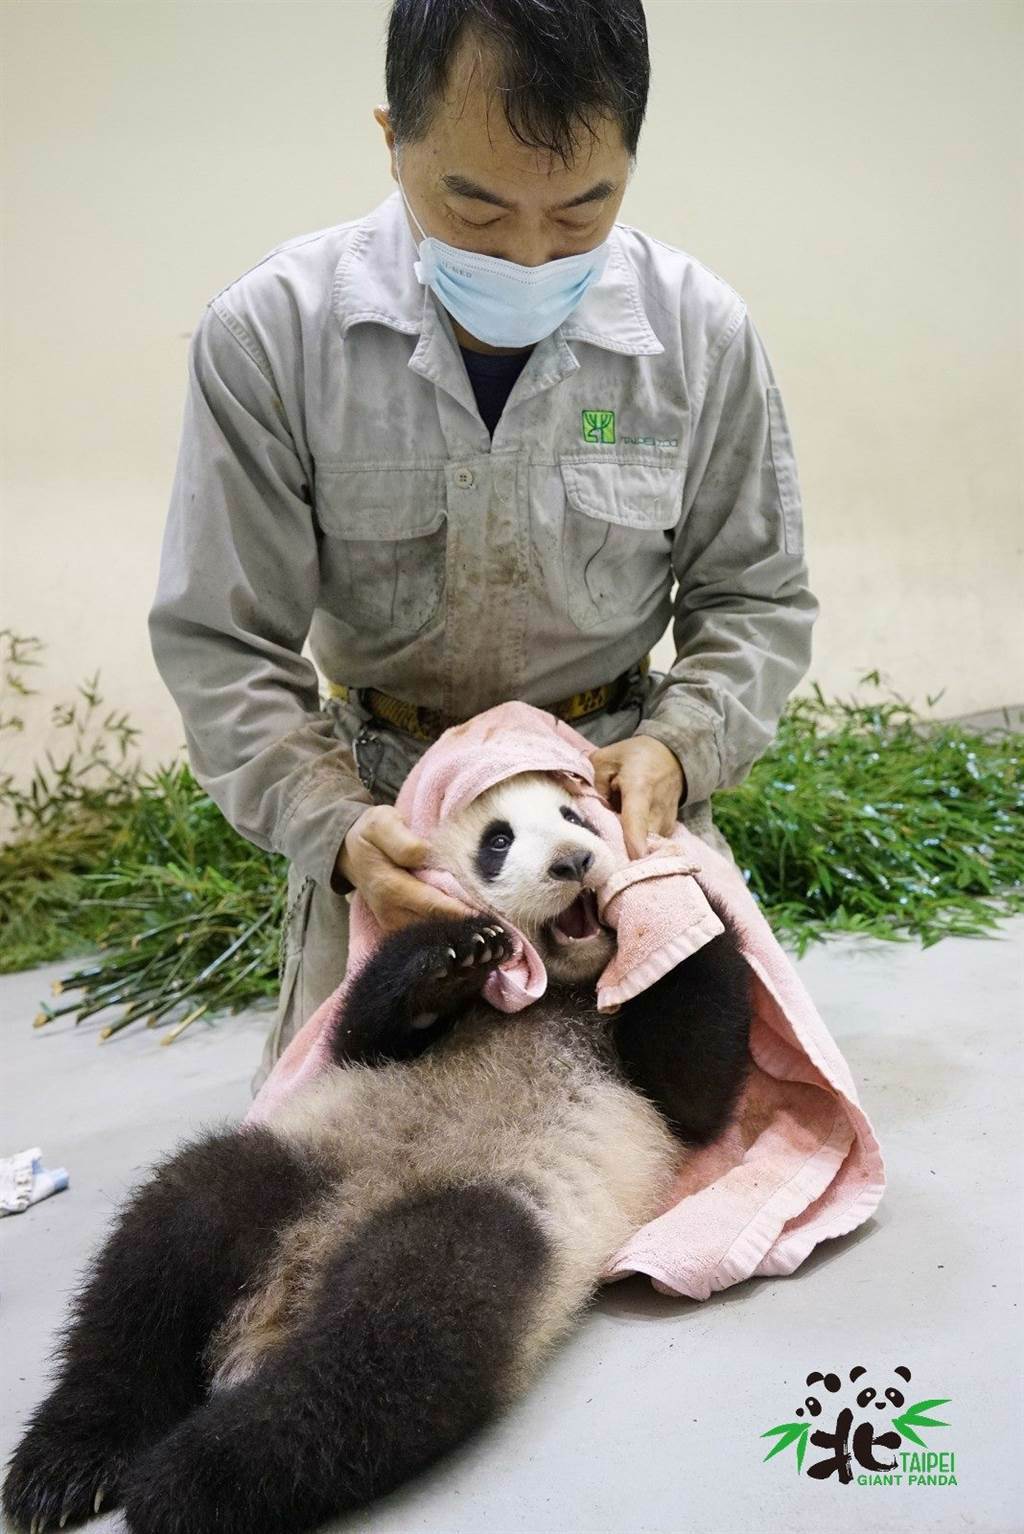 「圓寶」在被清潔時，甚至試圖抓住「彪拔」的手(圖片來源/臺北市立動物園)